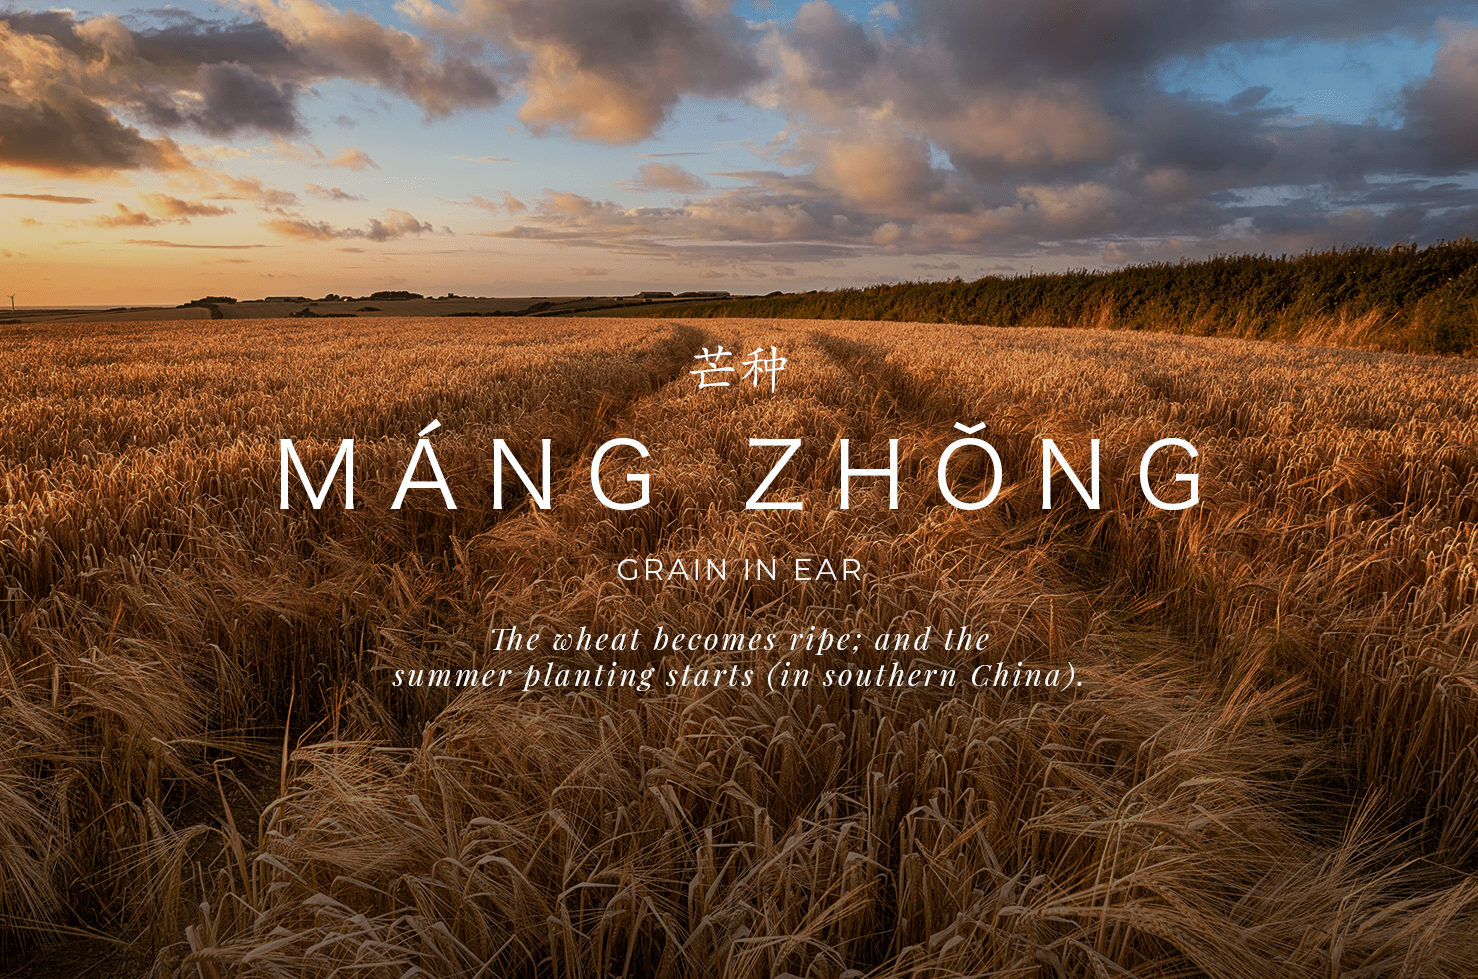 Mang Zhong - The Grain in Ear